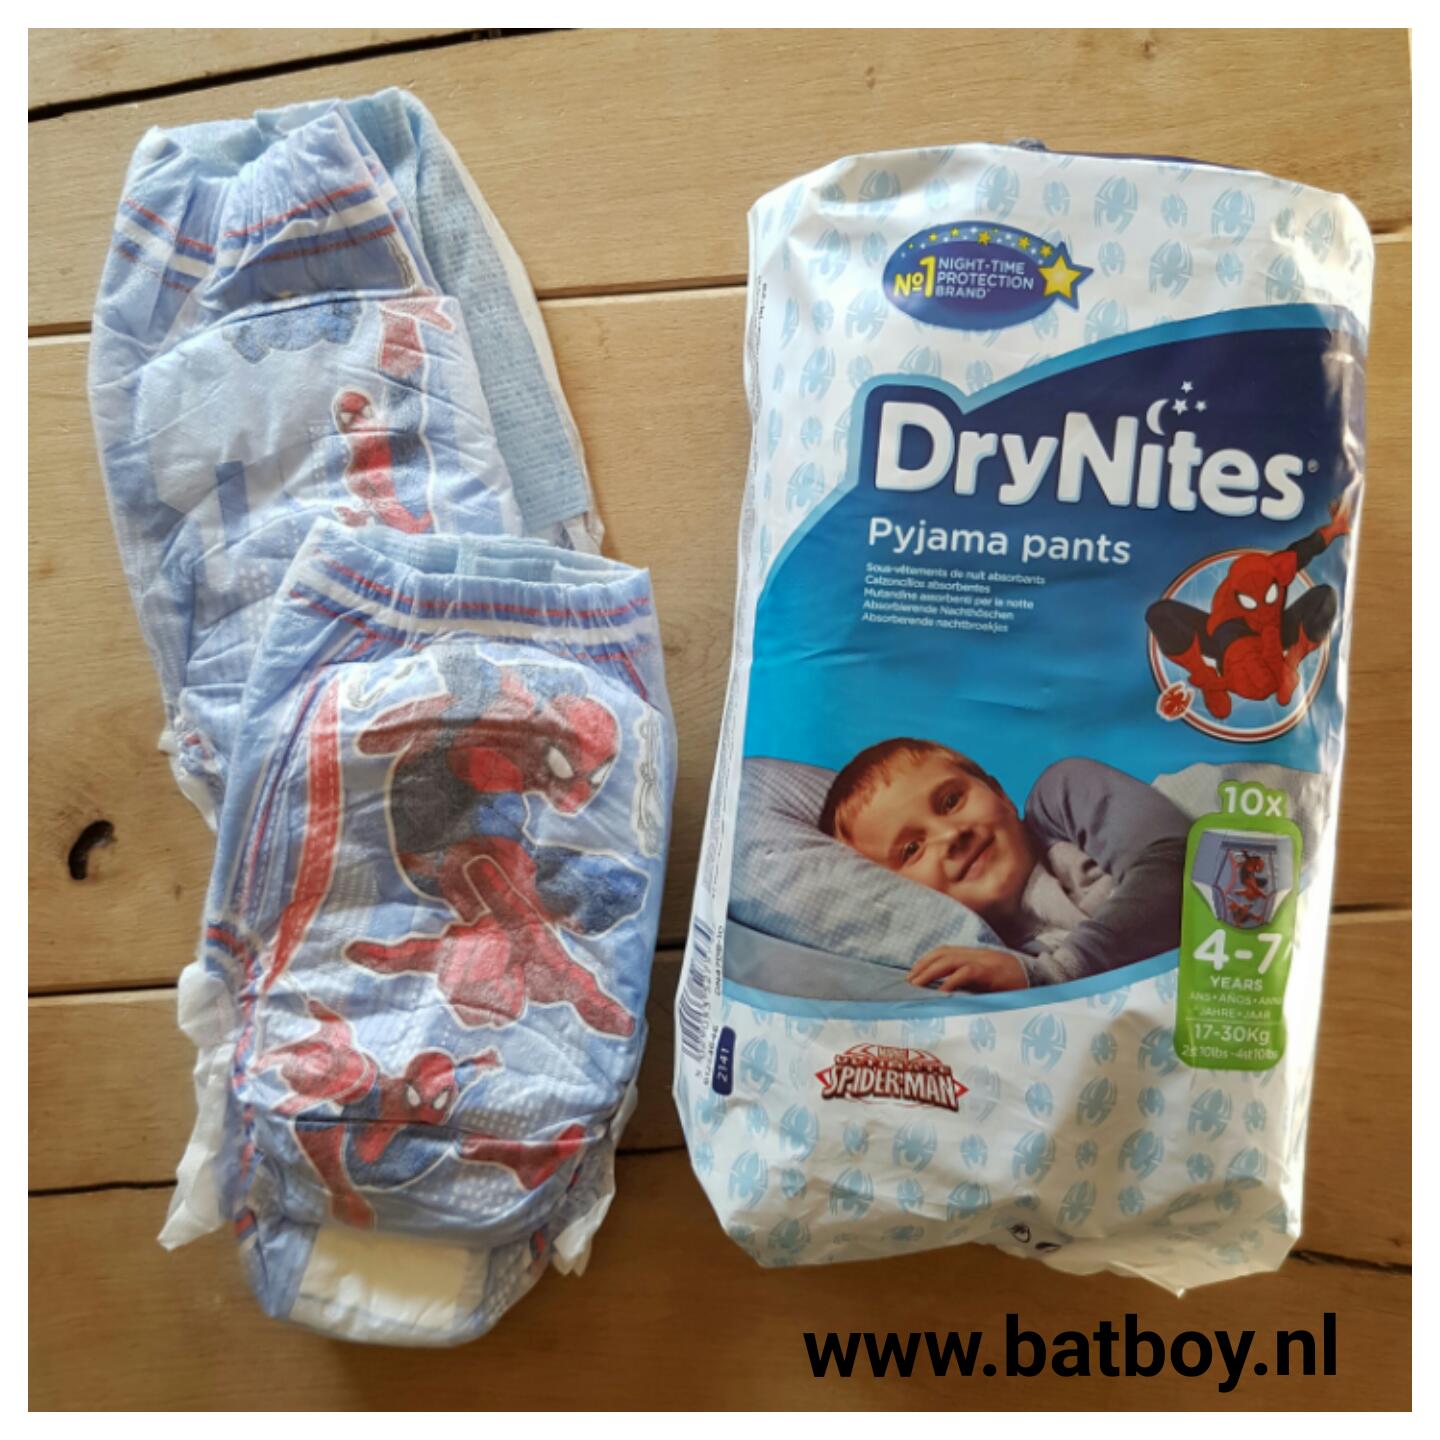 Conform Meisje nul Bedplassen | Kruidvat pyjamabroekjes vs Drynites | Batboy